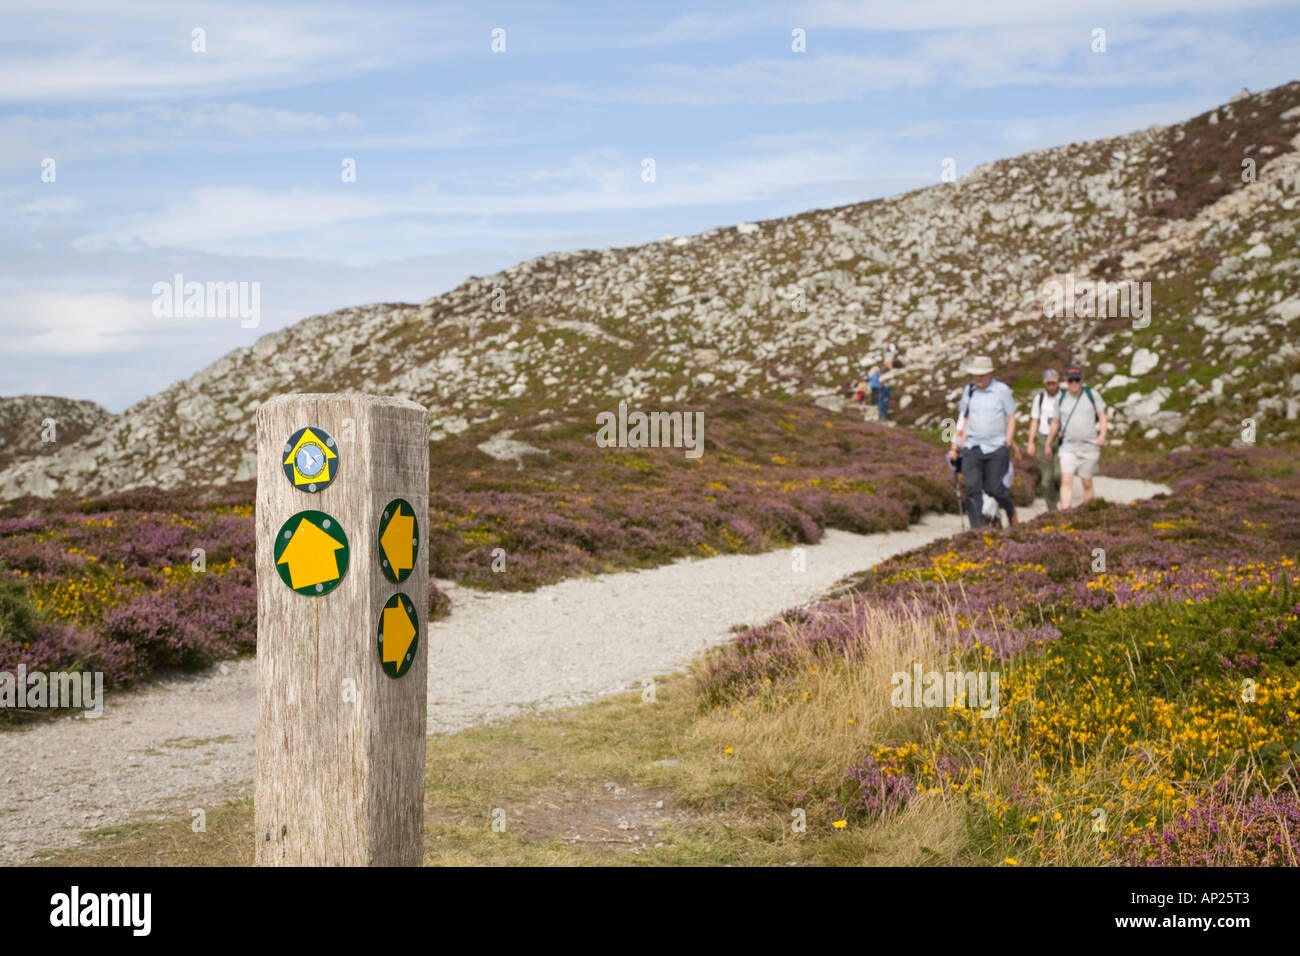 ISLE OF ANGLESEY COASTAL PATH et signpost avec flèches jaunes avec des promeneurs en été sur la montagne Holyhead Anglesey Pays de Galles UK Banque D'Images